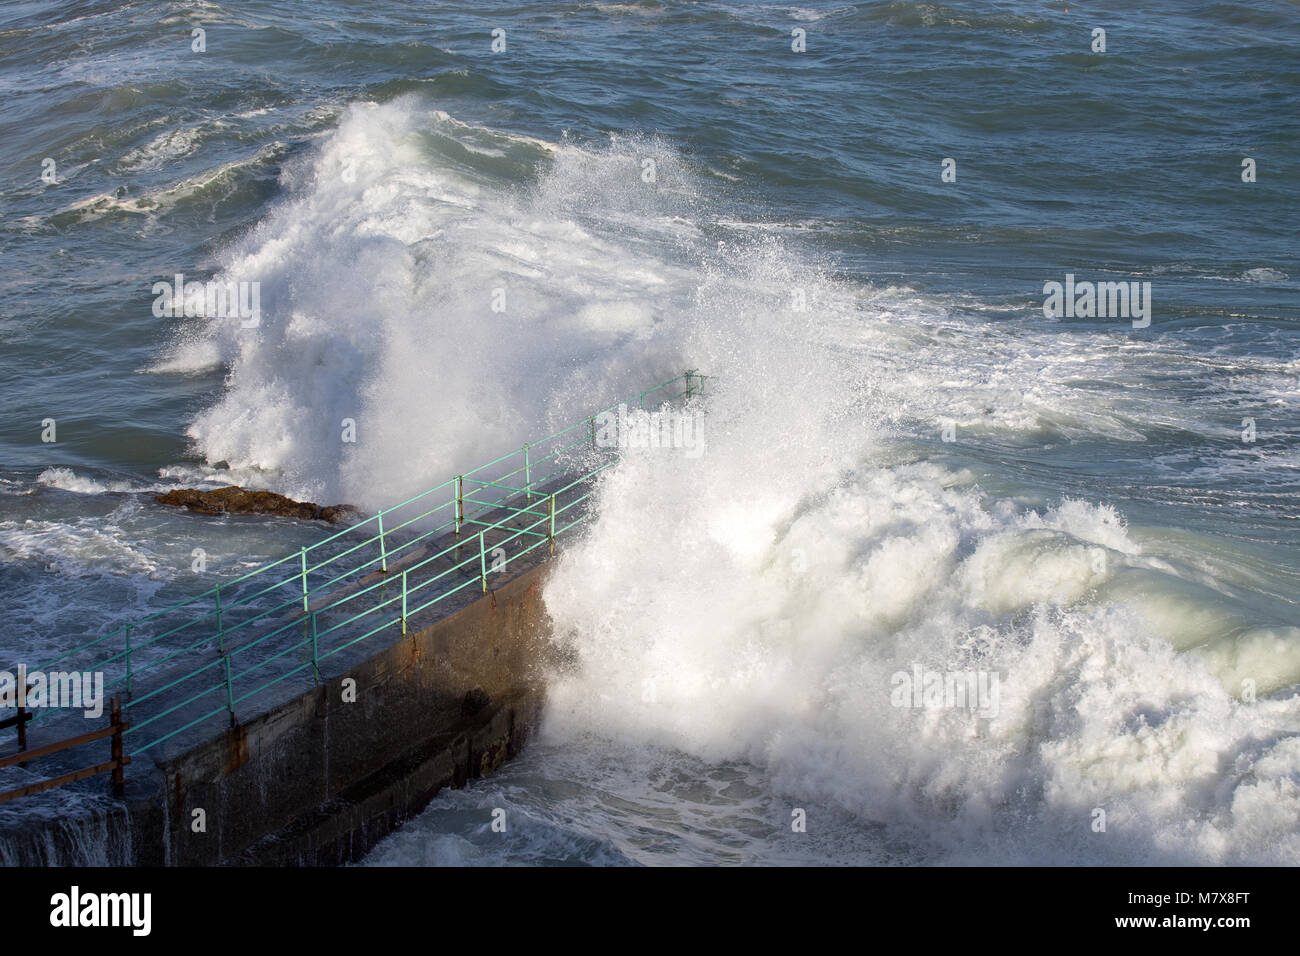 Rough Sea Waves Crashing Over a Pier, mediterranean sea, ligurian coast, Italy. Stock Photo